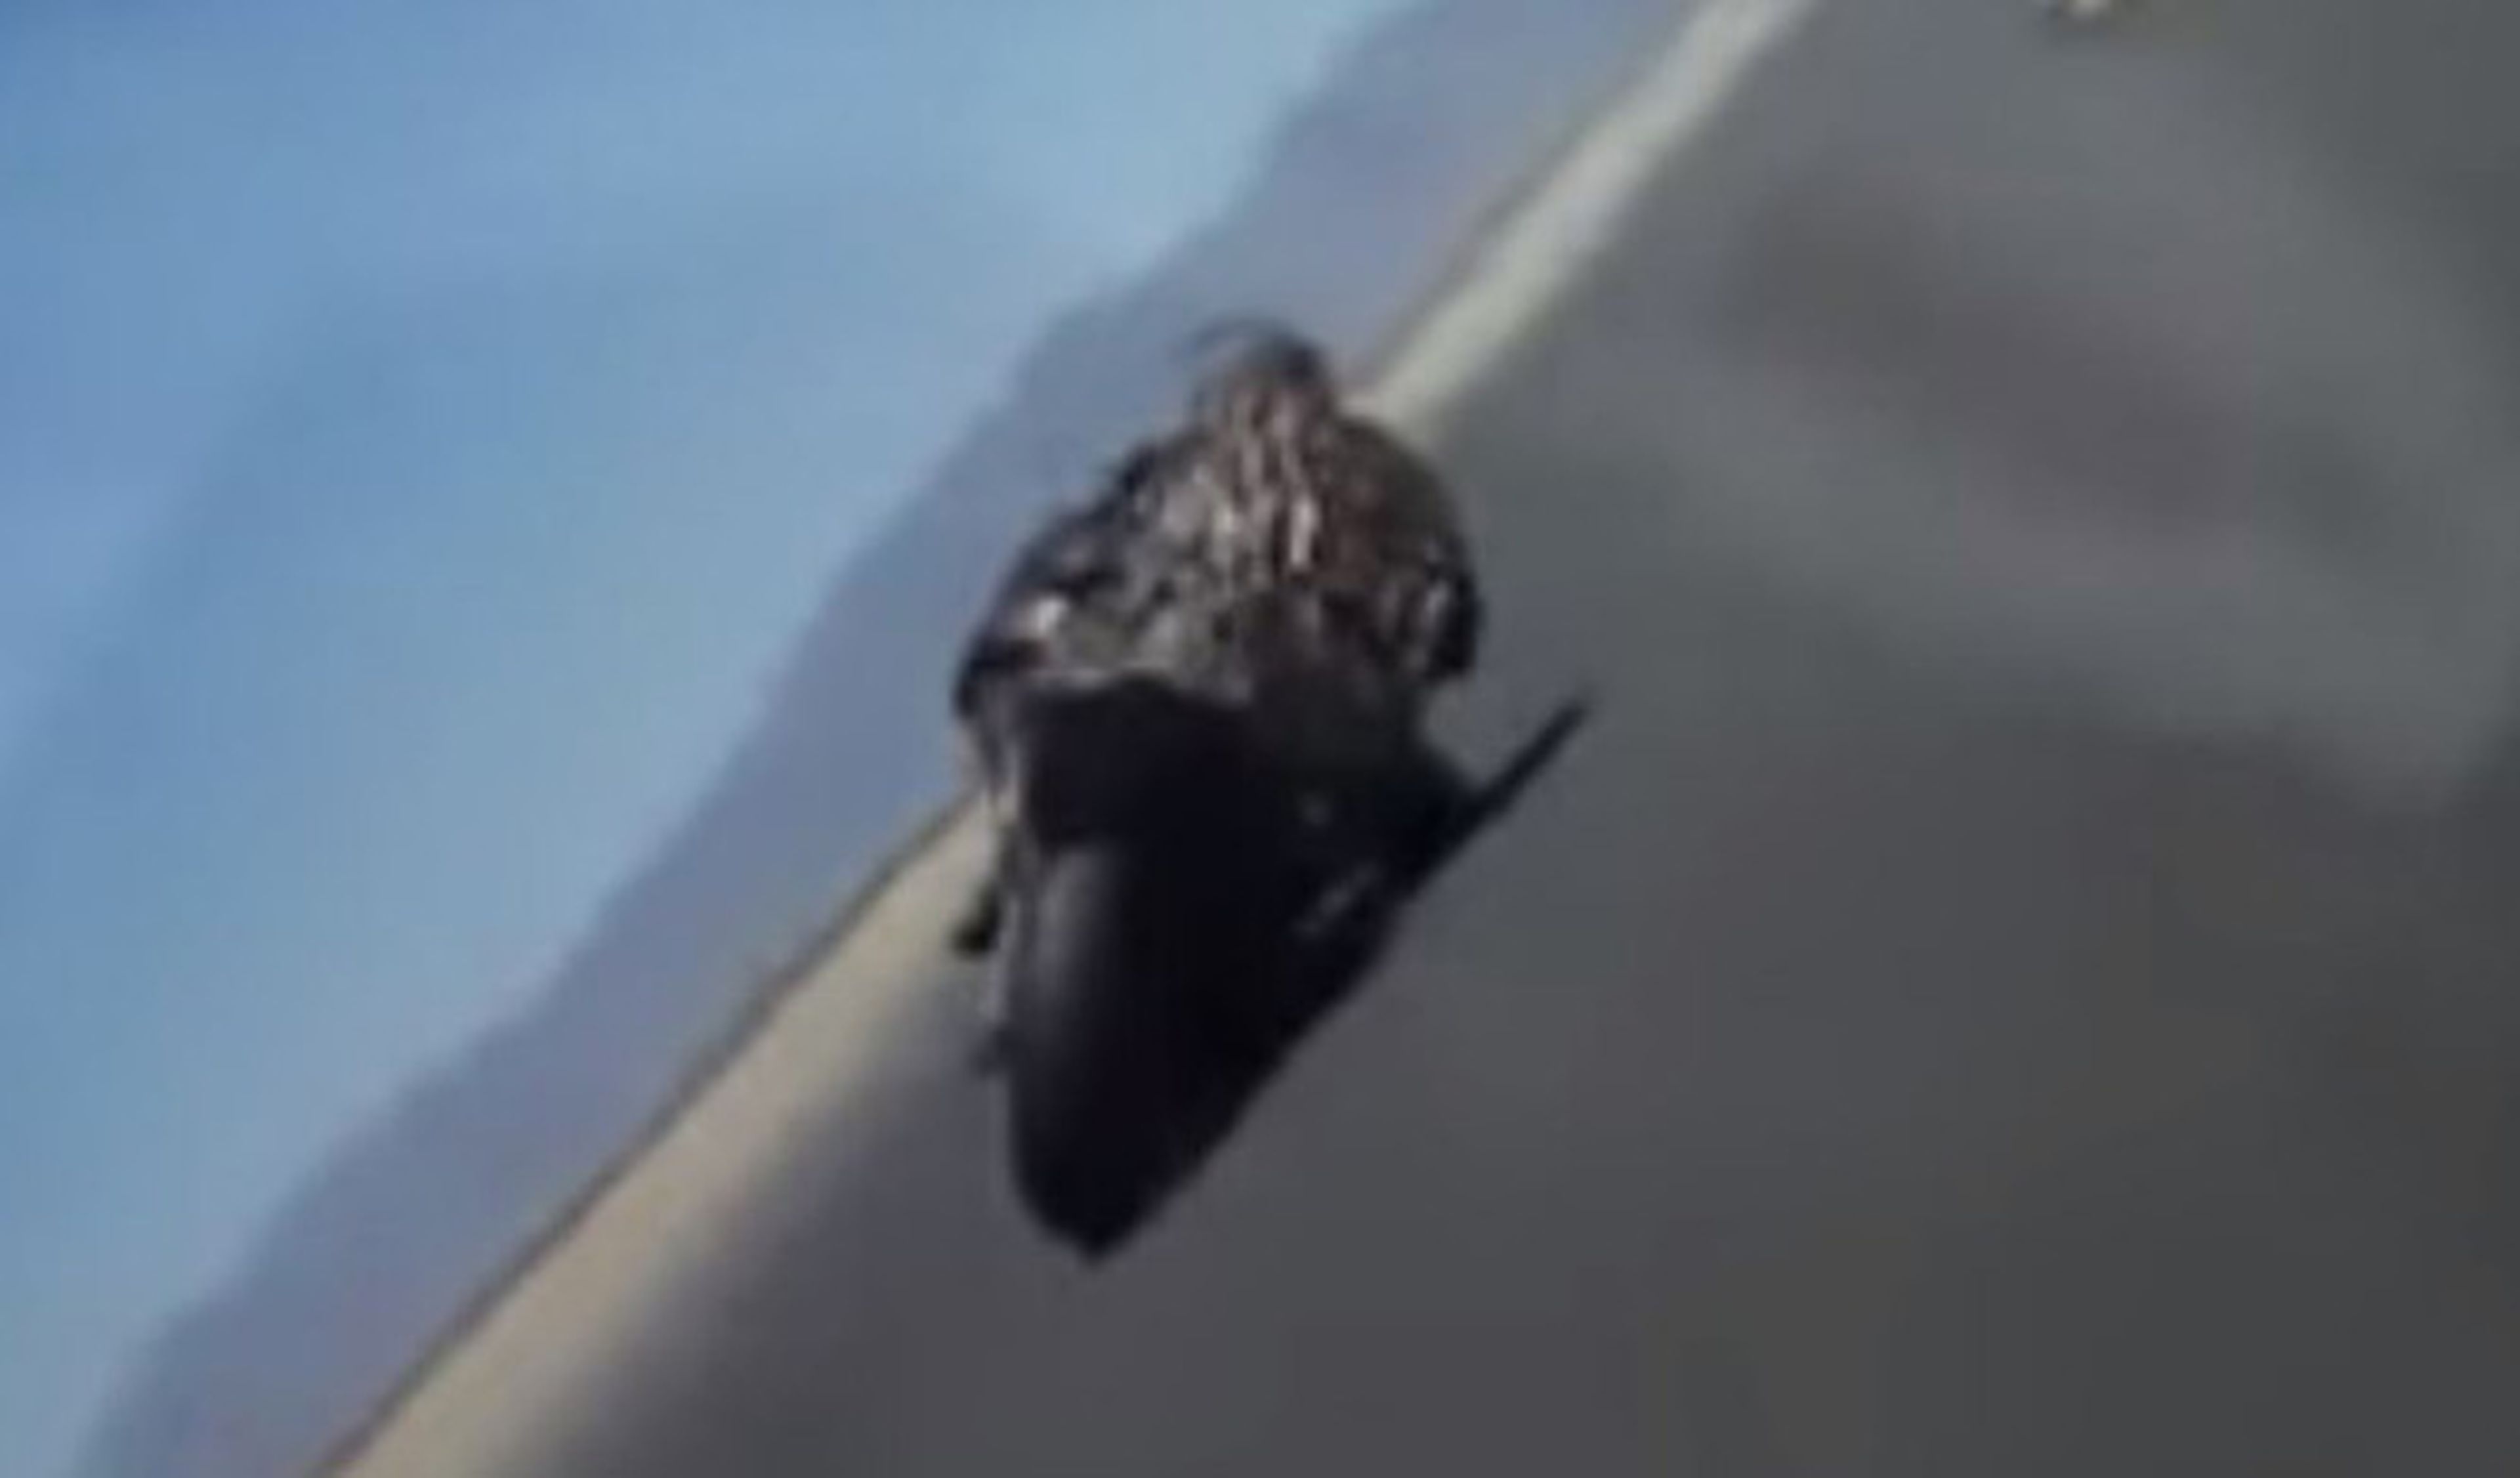 Vídeo: rozando con el casco en el asfalto